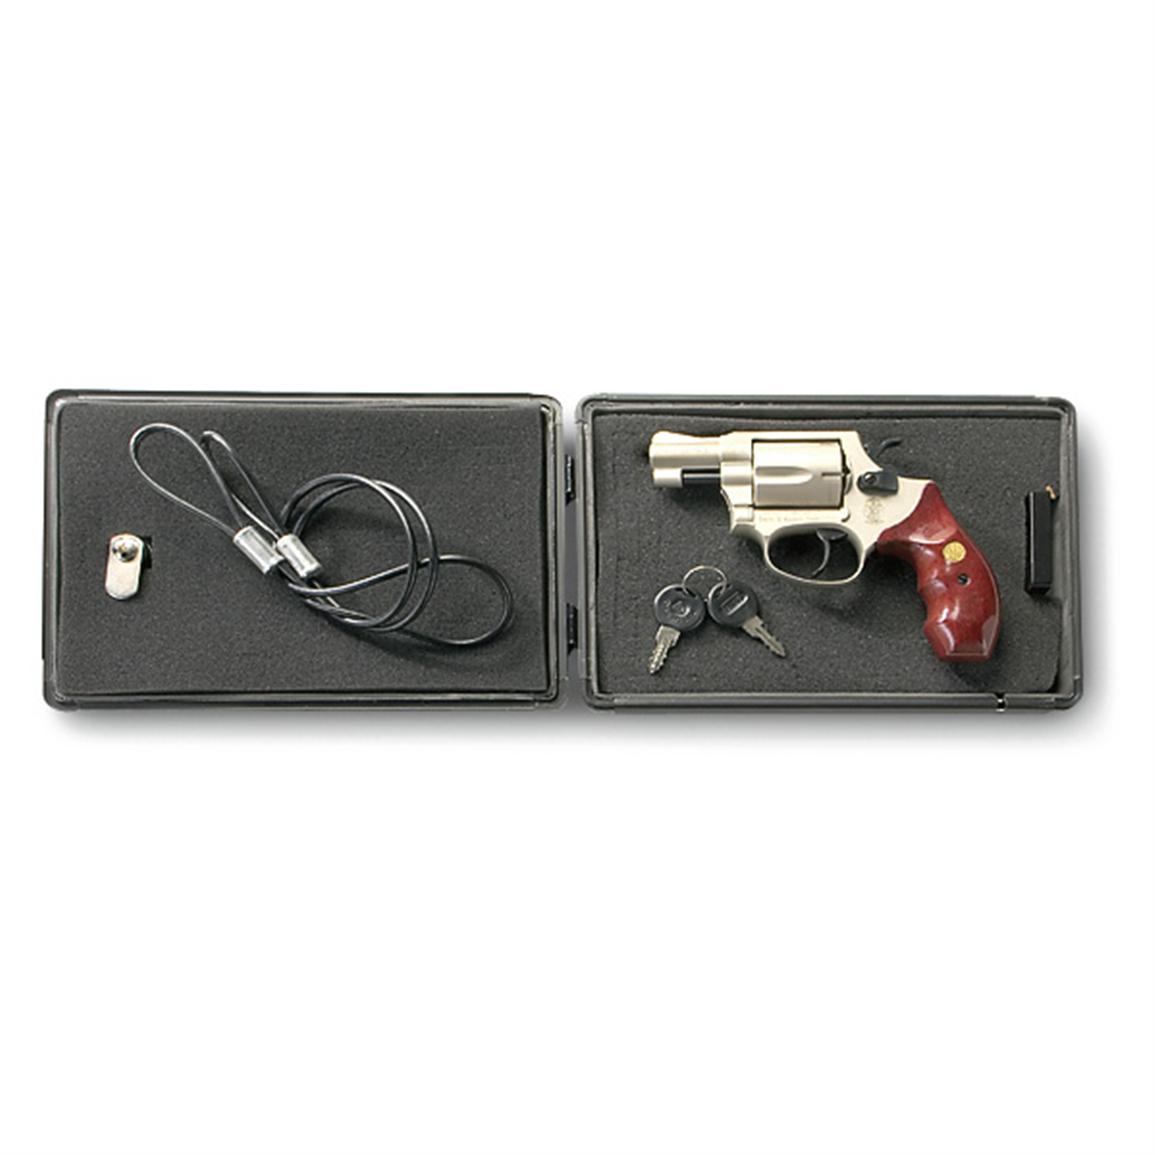 Sport Lock Locking Pistol Case - 146801, Gun Cases at Sportsman's Guide1155 x 1155